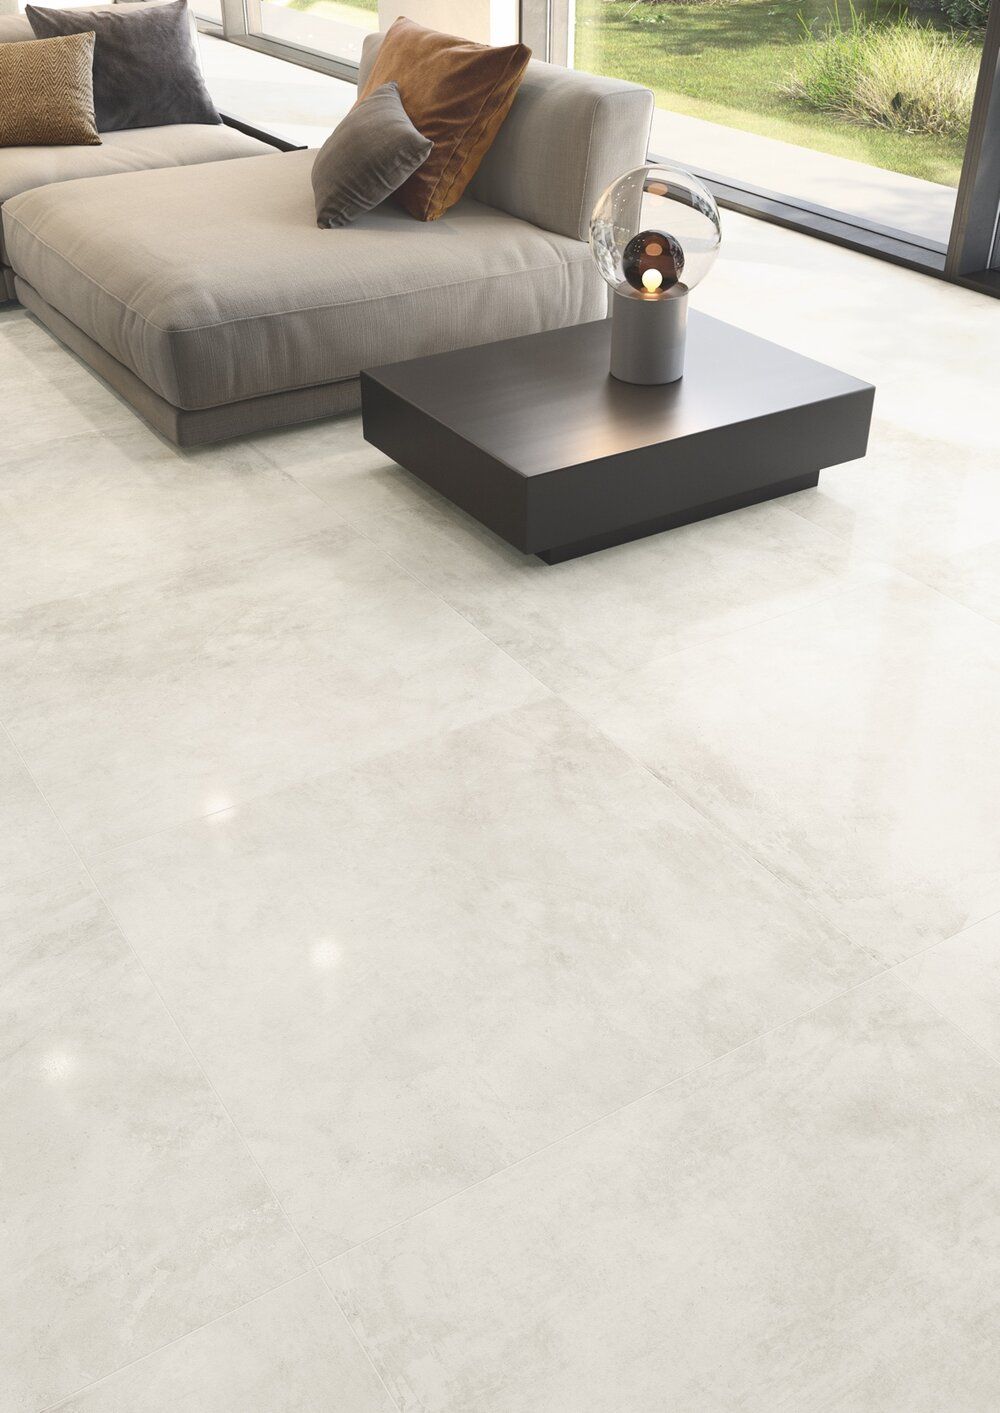 Trendy Floor Tile Designs for Modern
Homes